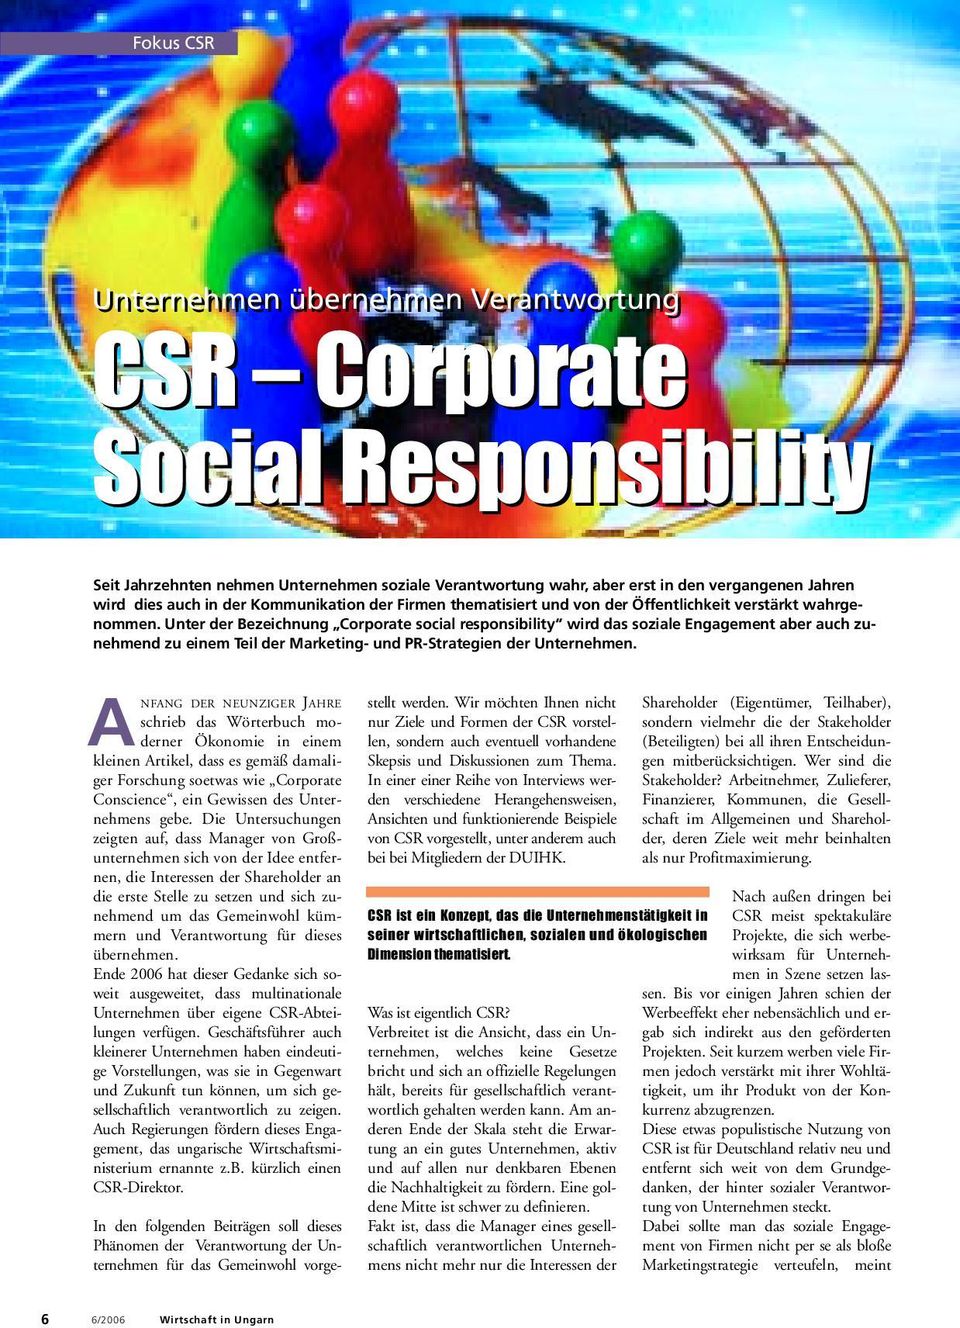 Unter der Bezeichnung Corporate social responsibility wird das soziale Engagement aber auch zunehmend zu einem Teil der Marketing- und PR-Strategien der Unternehmen.